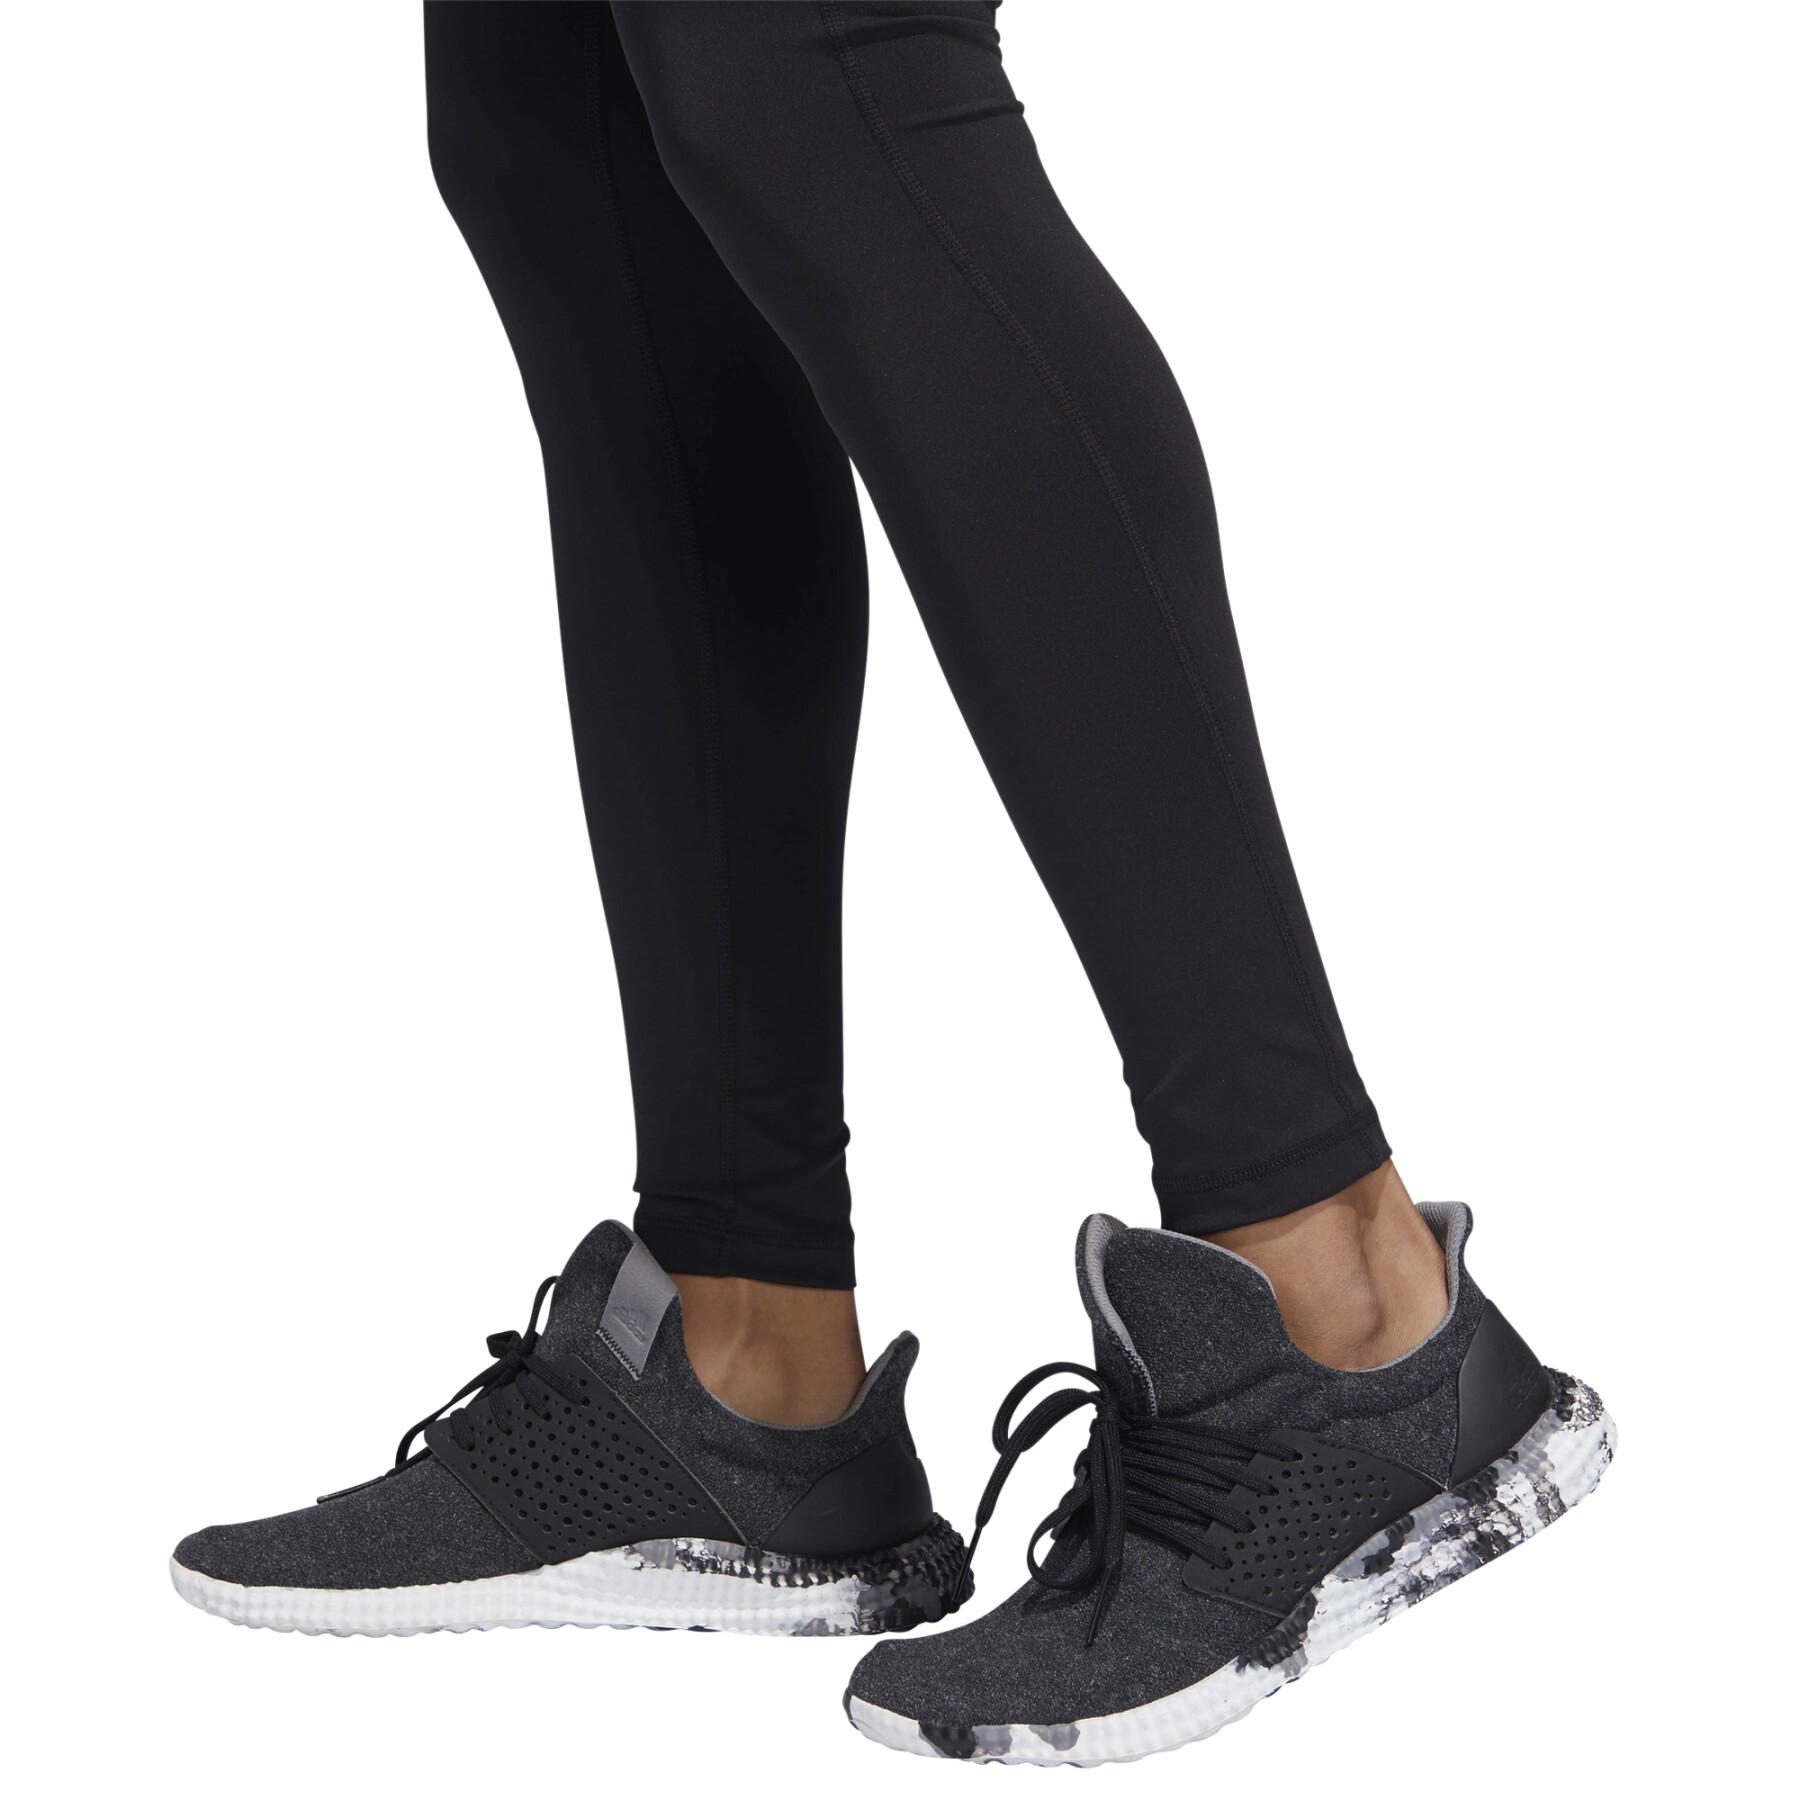 Pernas de mulher adidas Design 2 Move High-Rise long